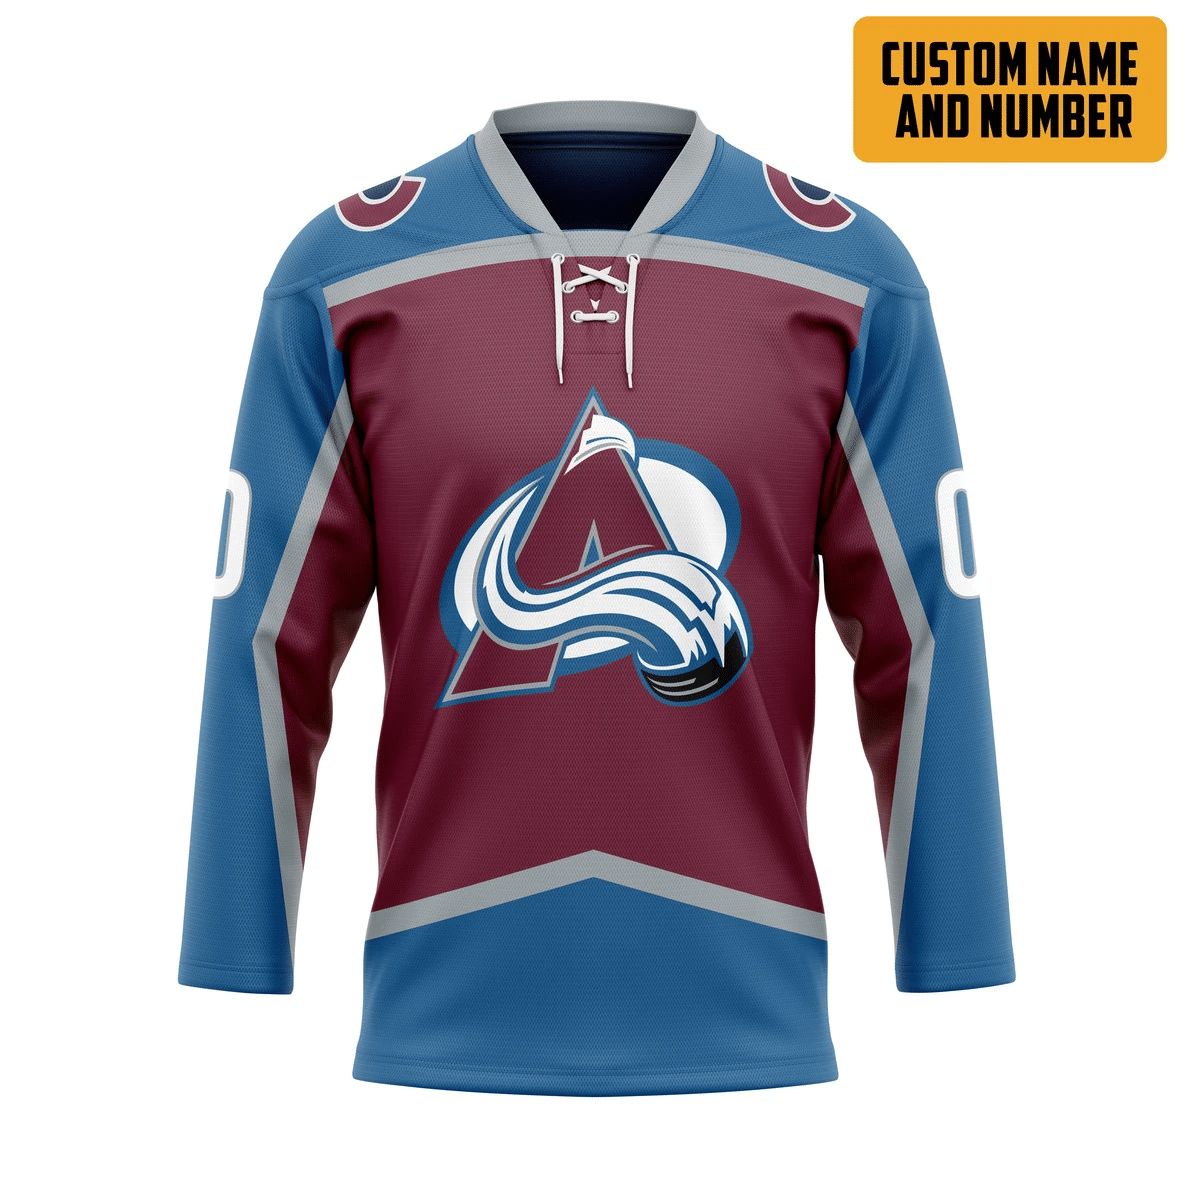 It's only $50 so don't miss out - Be sure to pick up a new hockey shirt today! 353